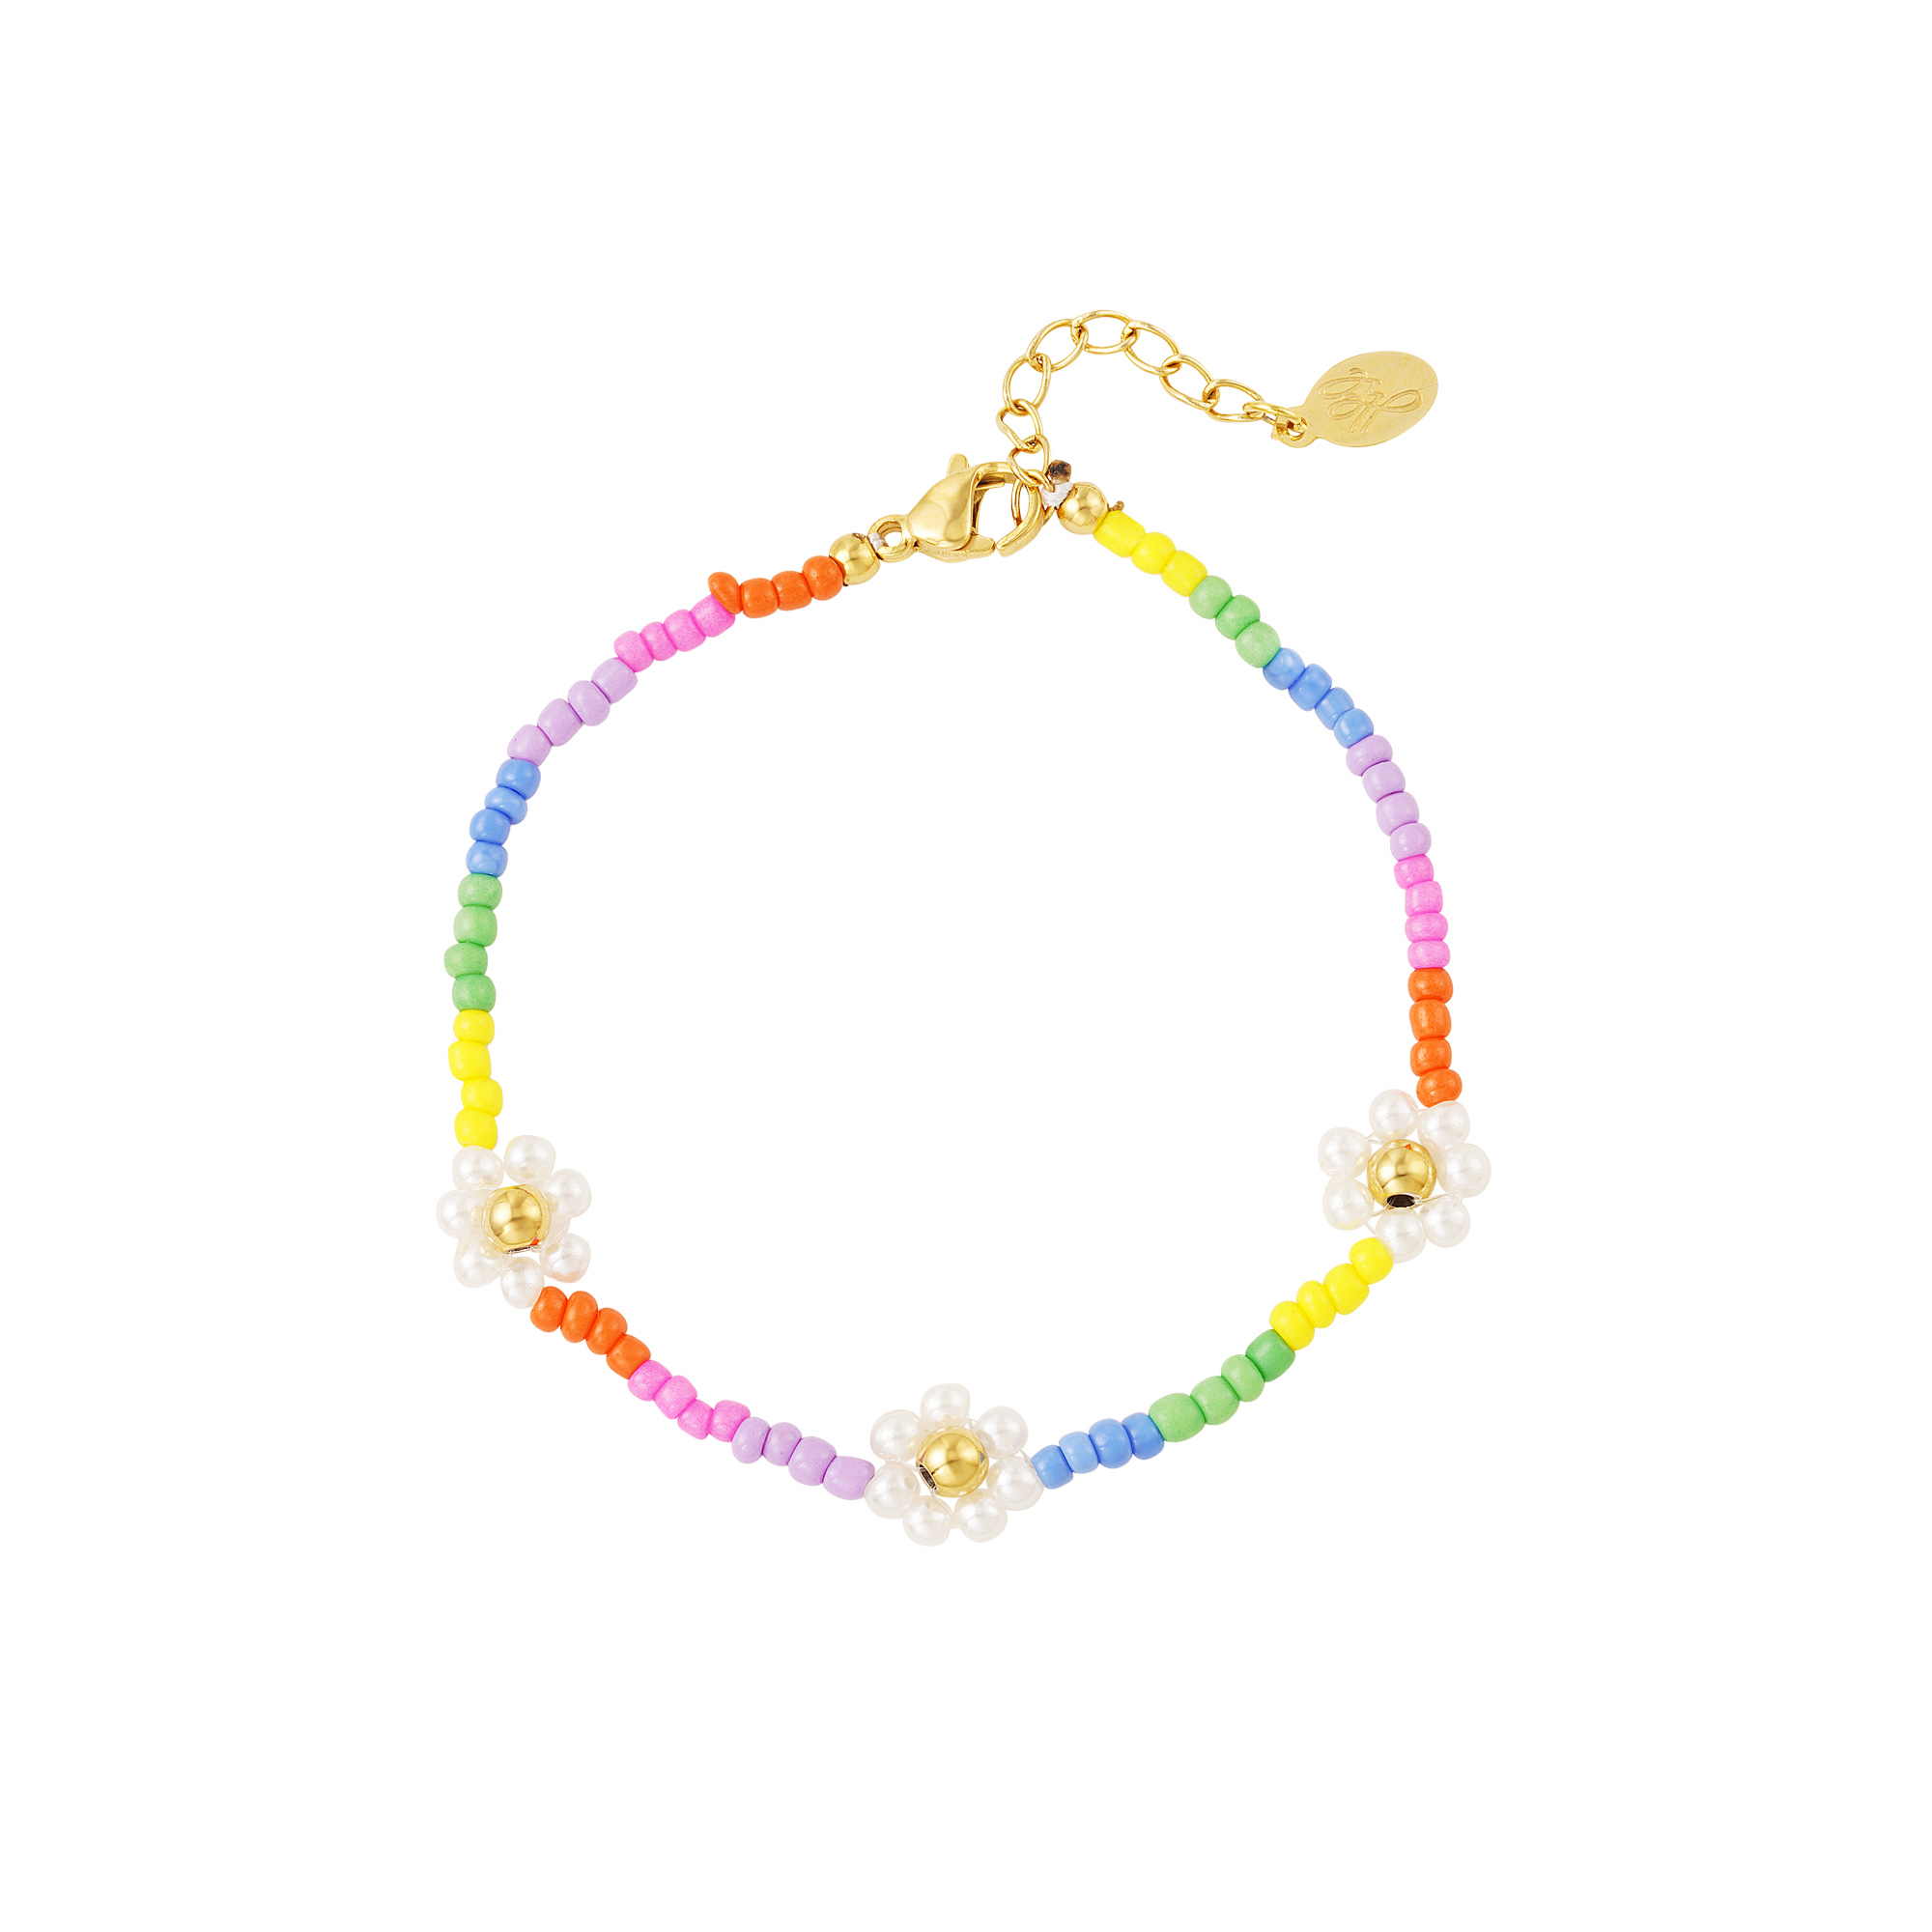 Regenbogen-gänseblümchen-armband - rainbow-kollektion